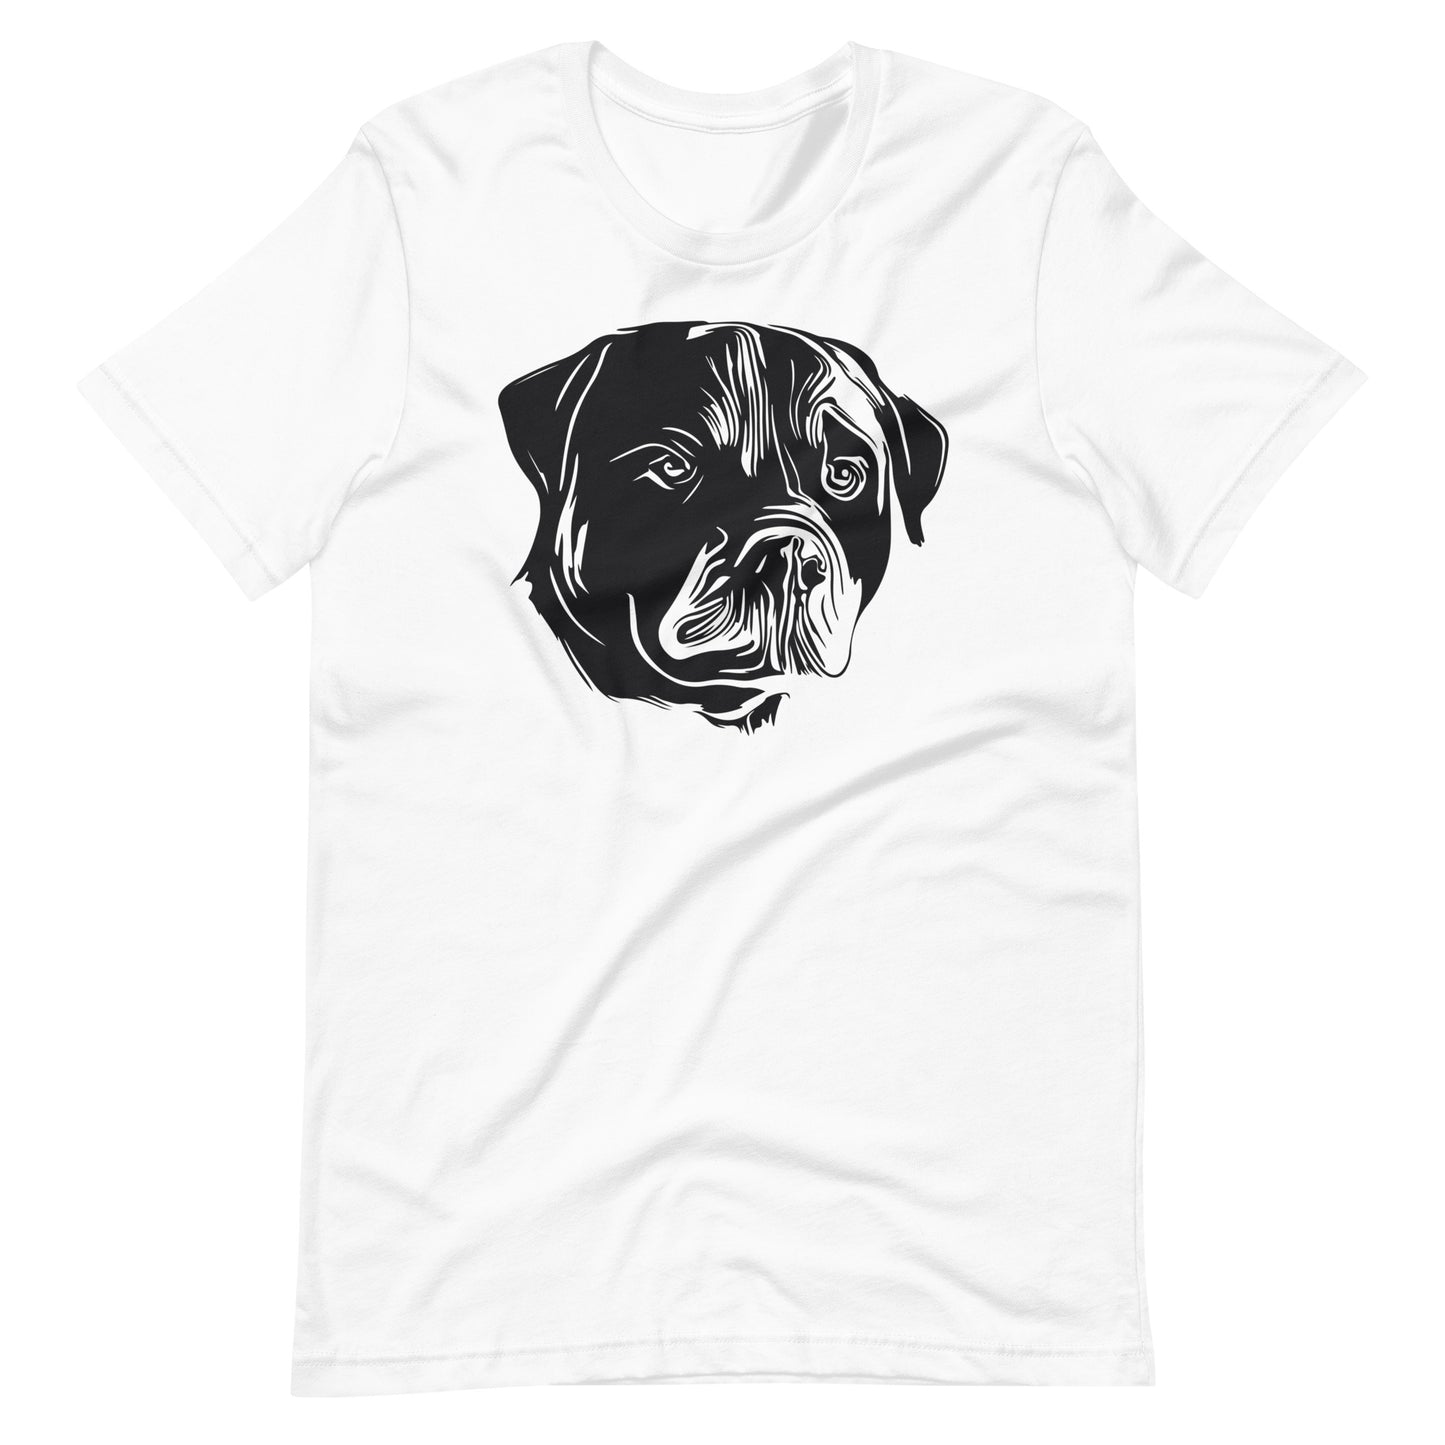 Black Rottweiler face silhouette on unisex white t-shirt